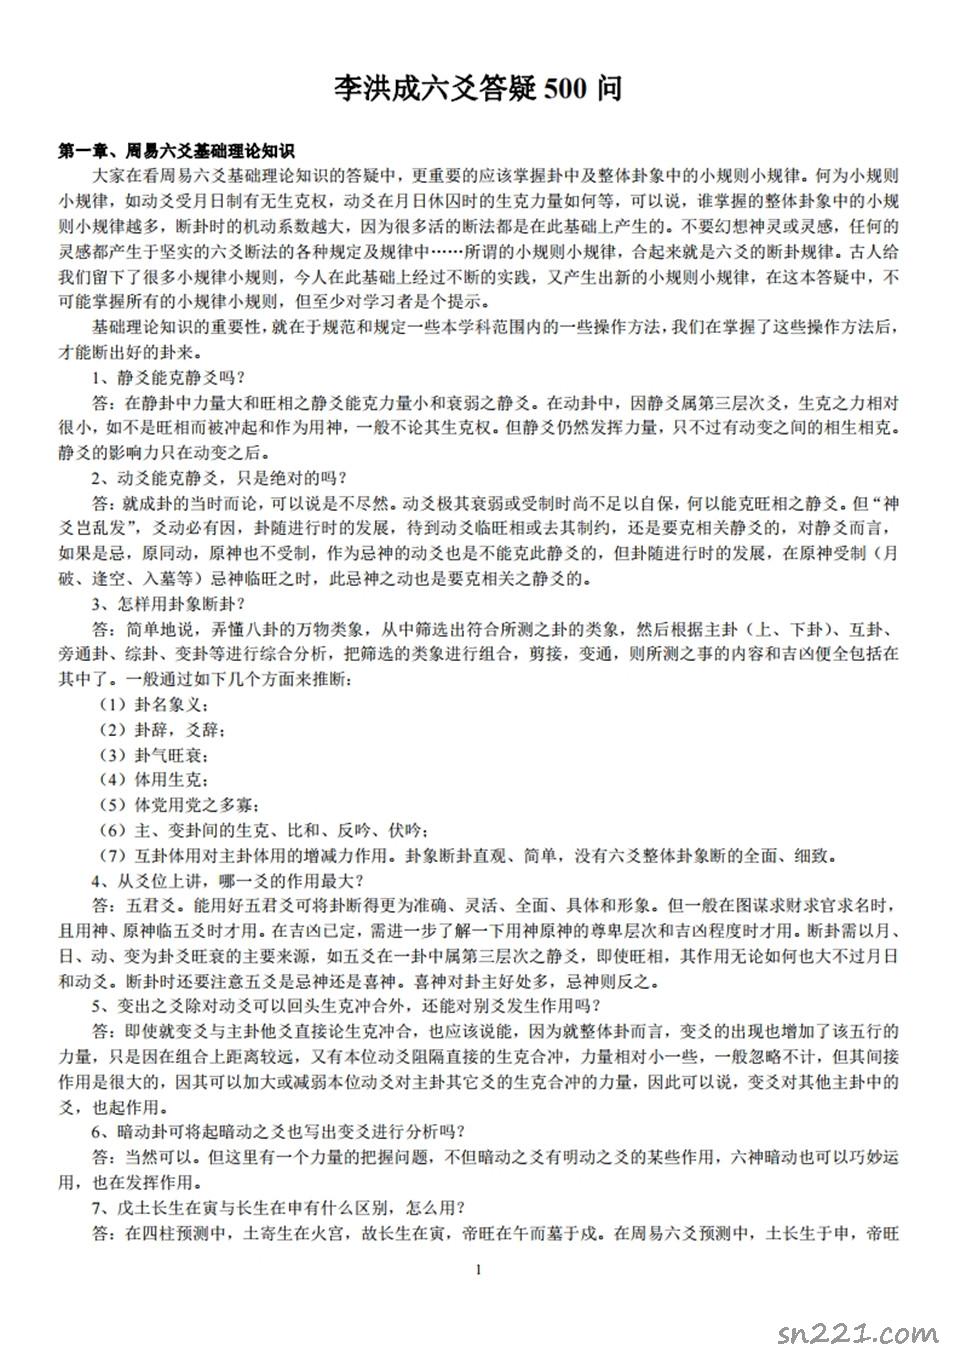 《李洪成六爻答疑500問》.pdf